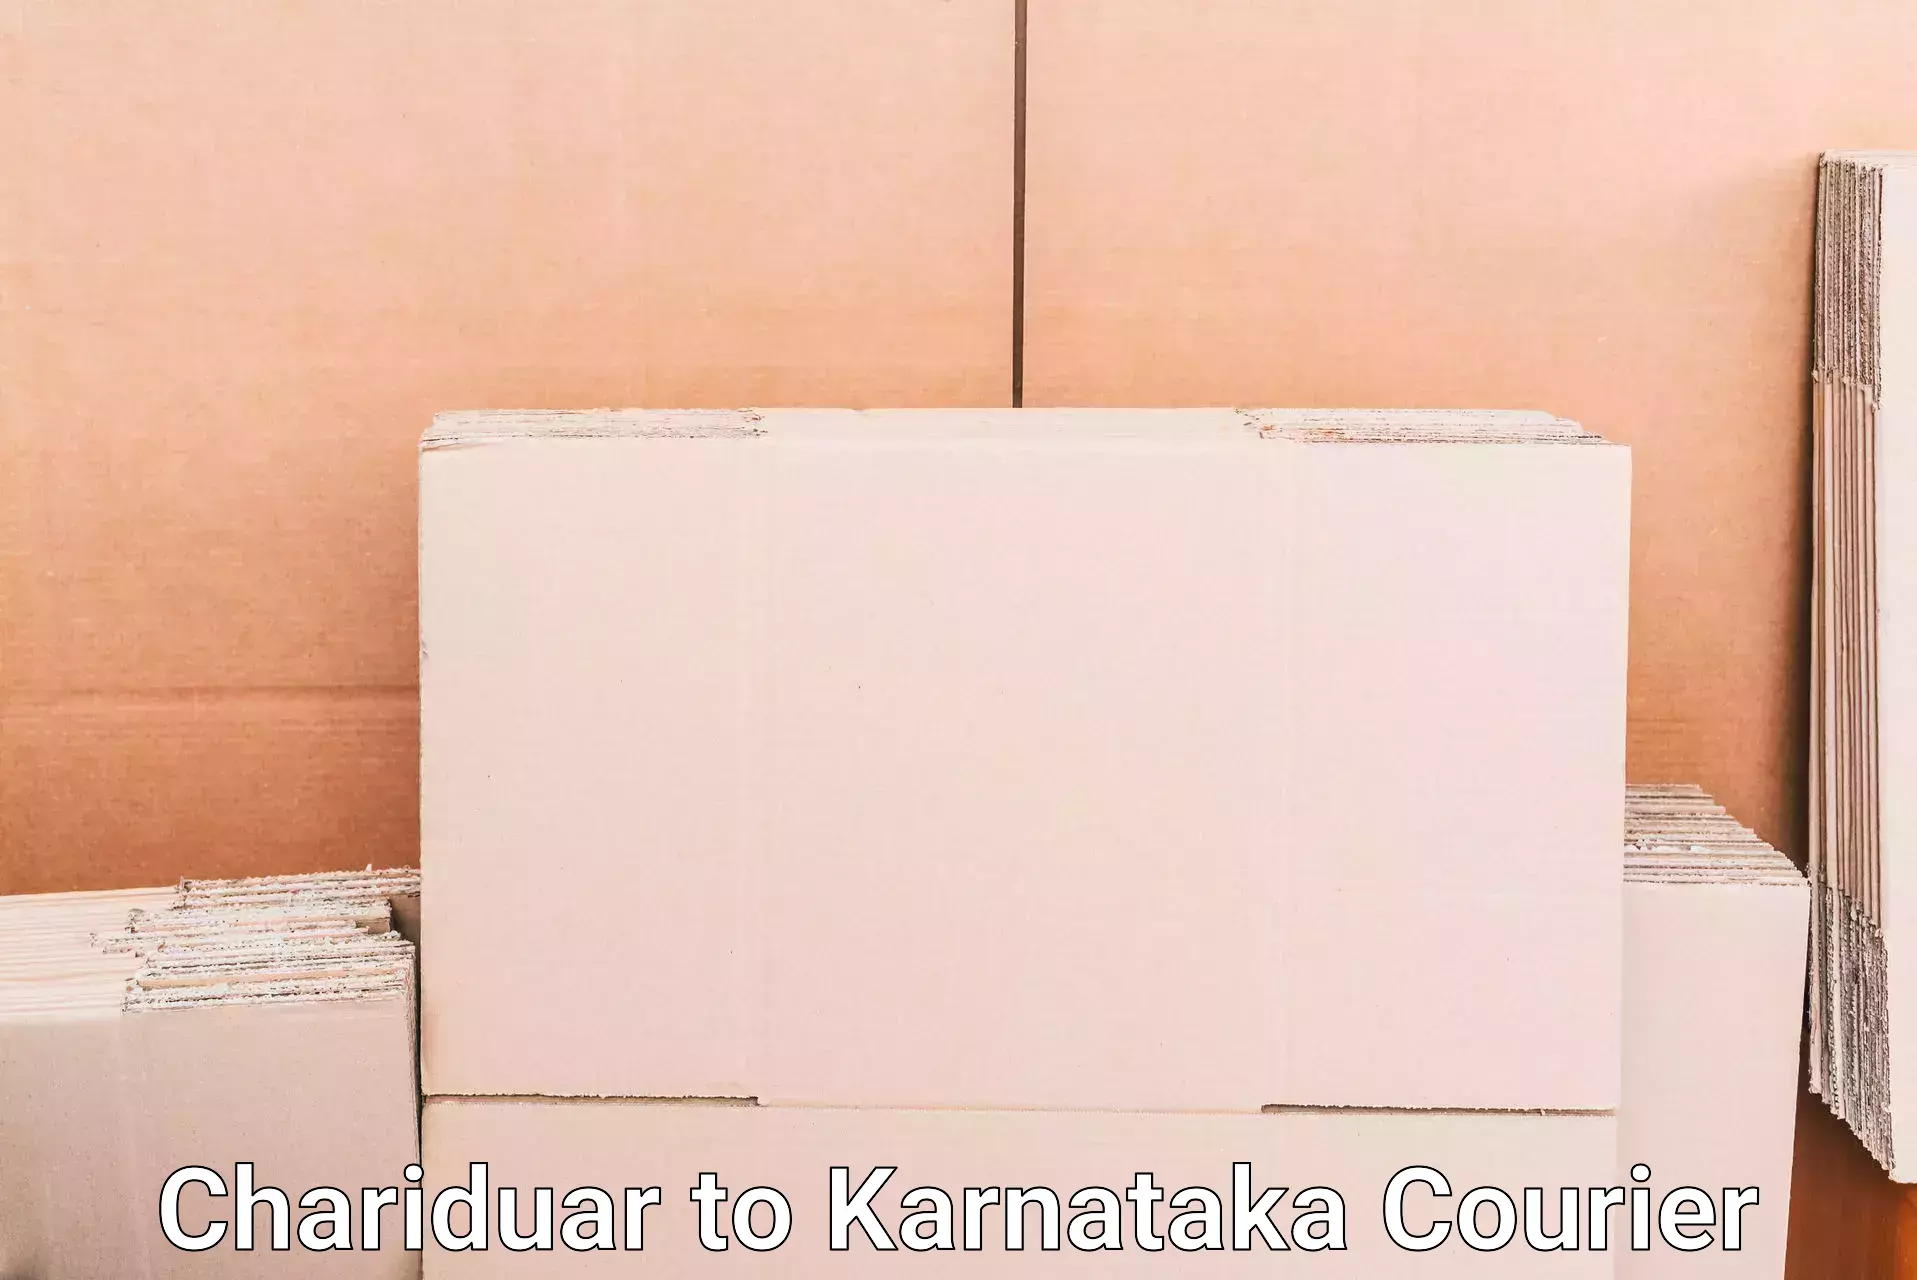 Electronic items luggage shipping Chariduar to Kanjarakatte